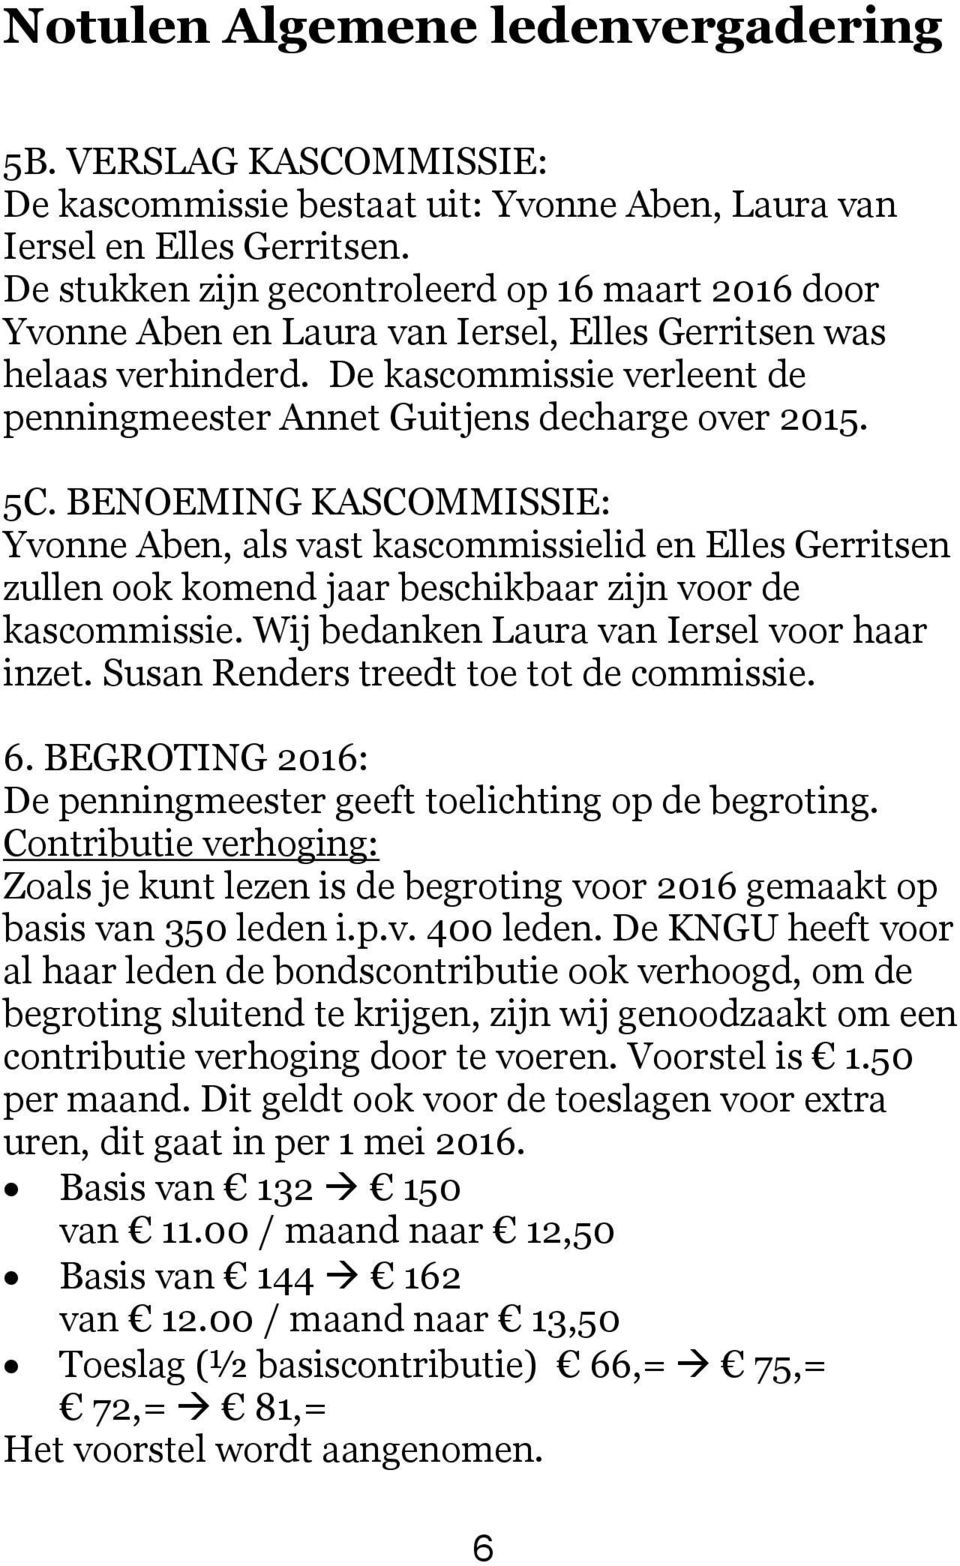 De kascommissie verleent de penningmeester Annet Guitjens decharge over 2015. 5C.